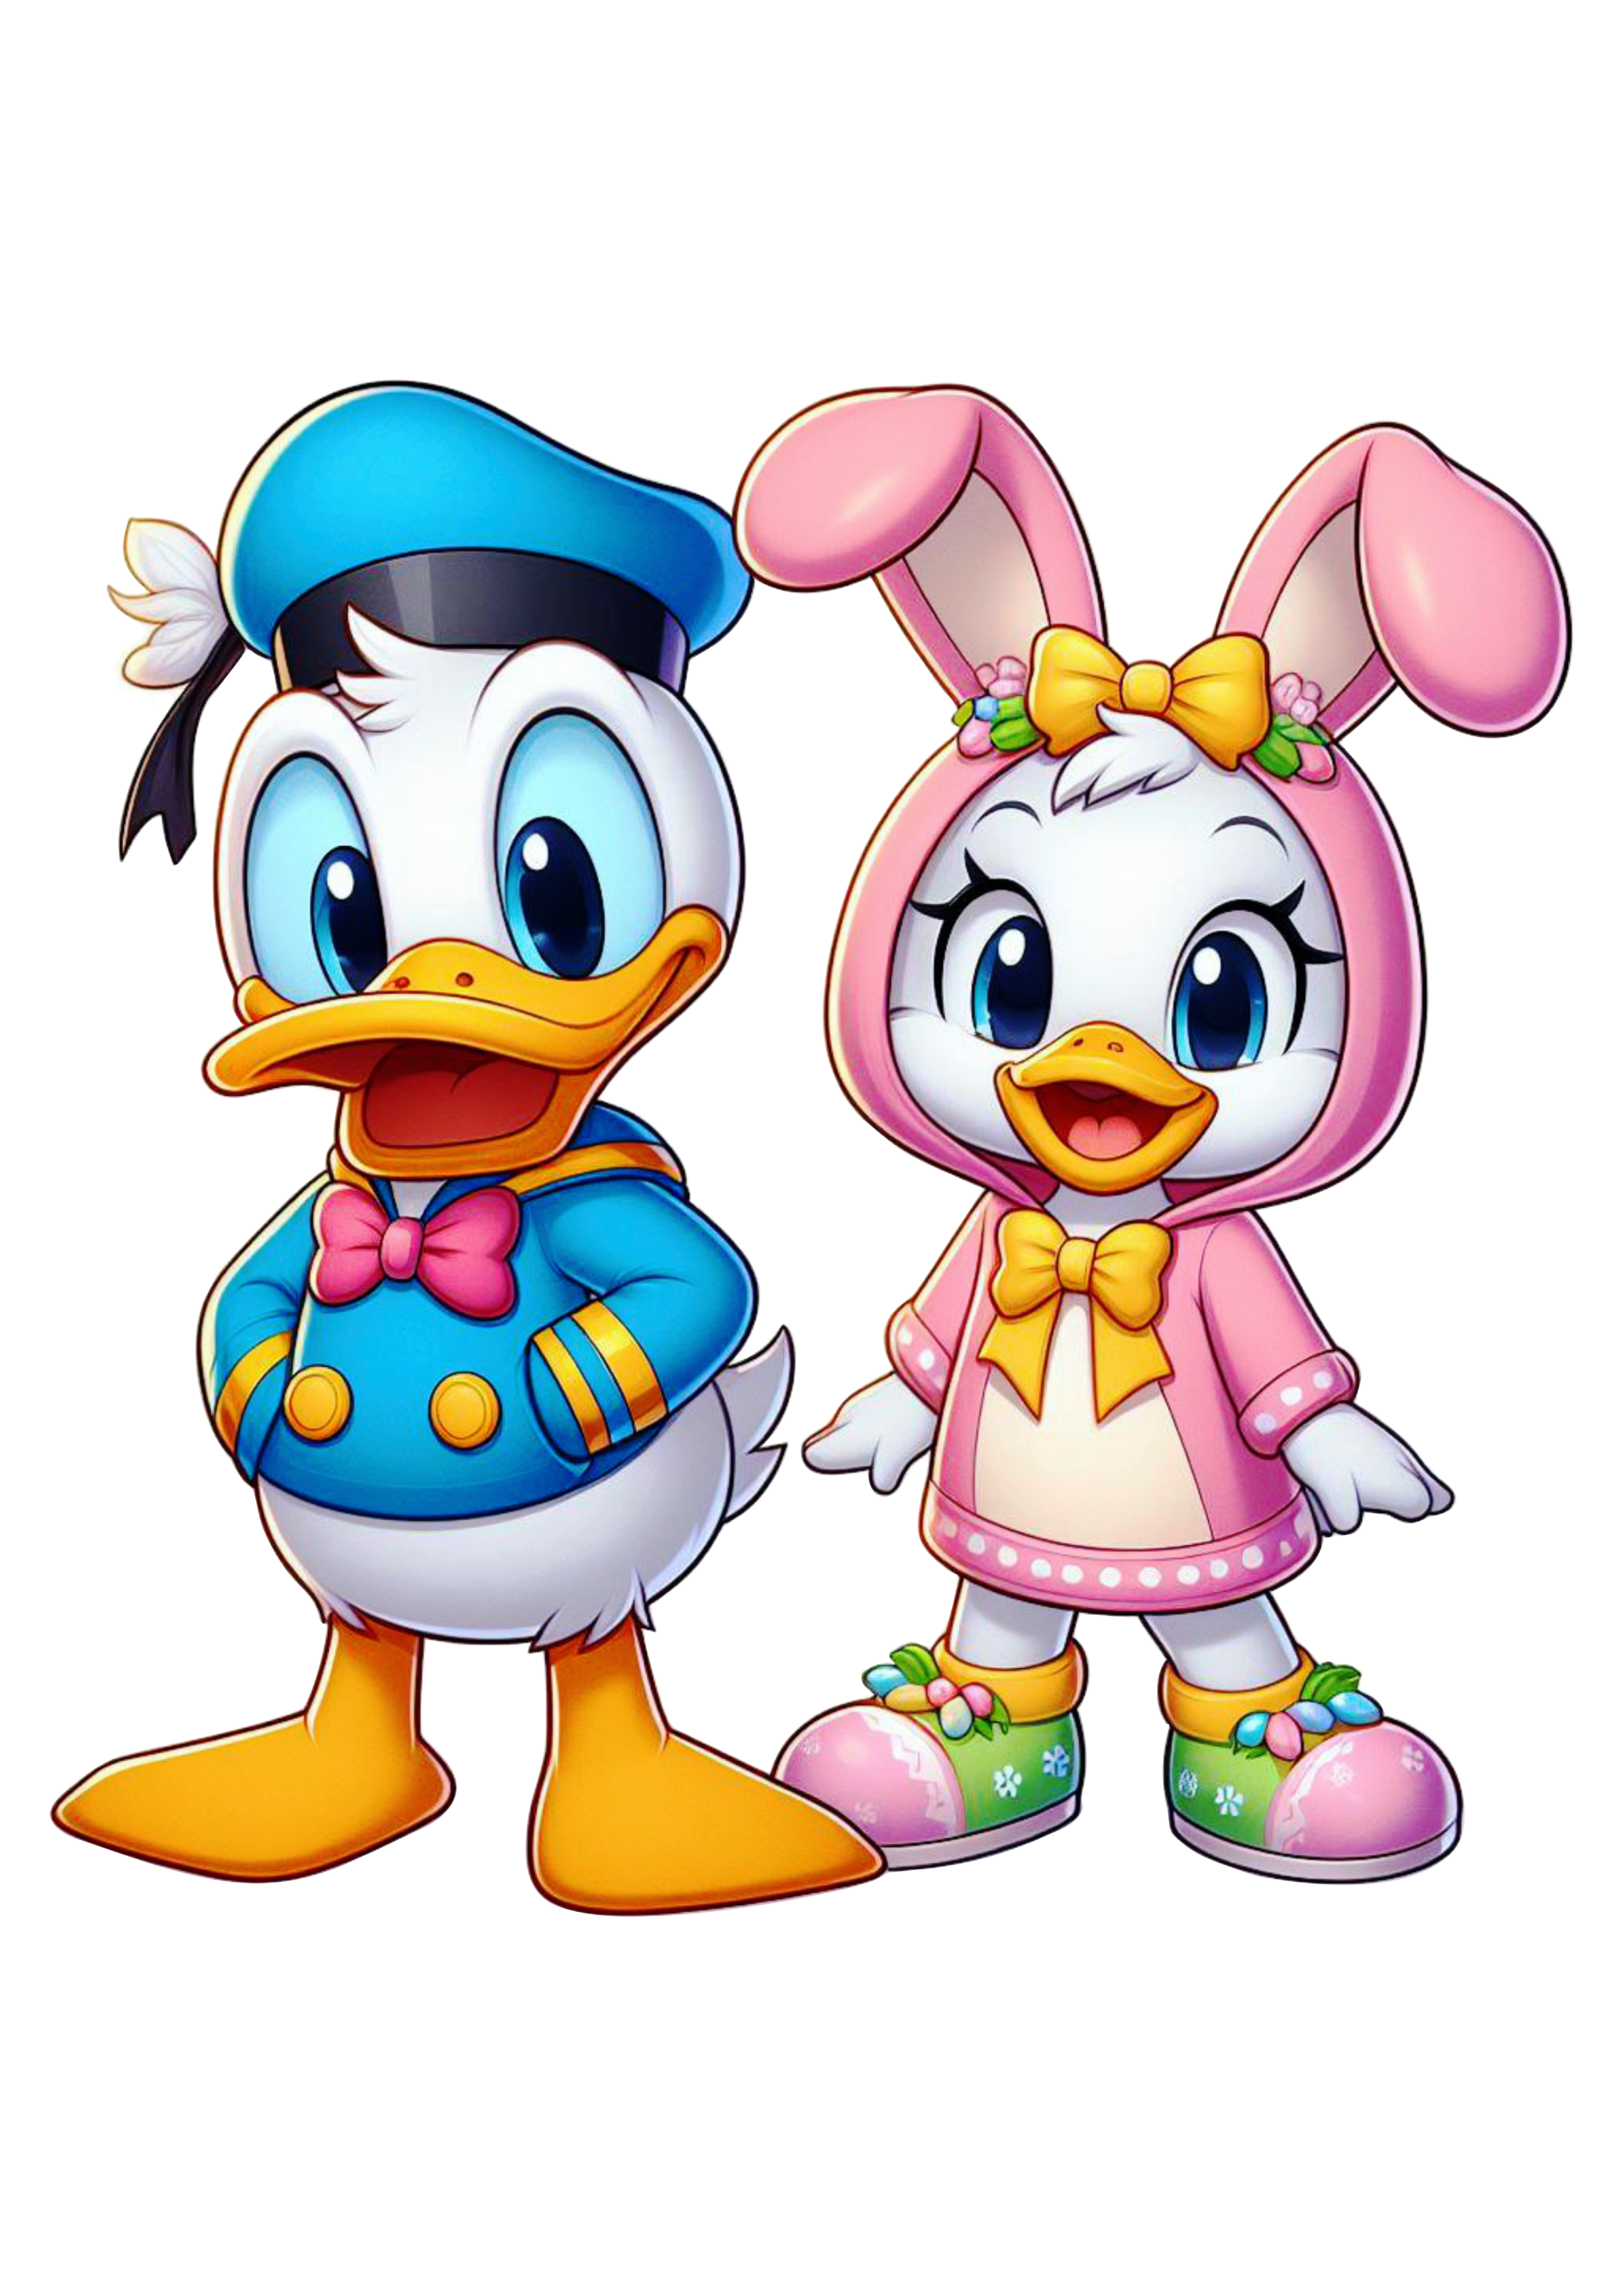 Pato Donald baby e patinha fofinha fantasiado de coelhinho da páscoa png